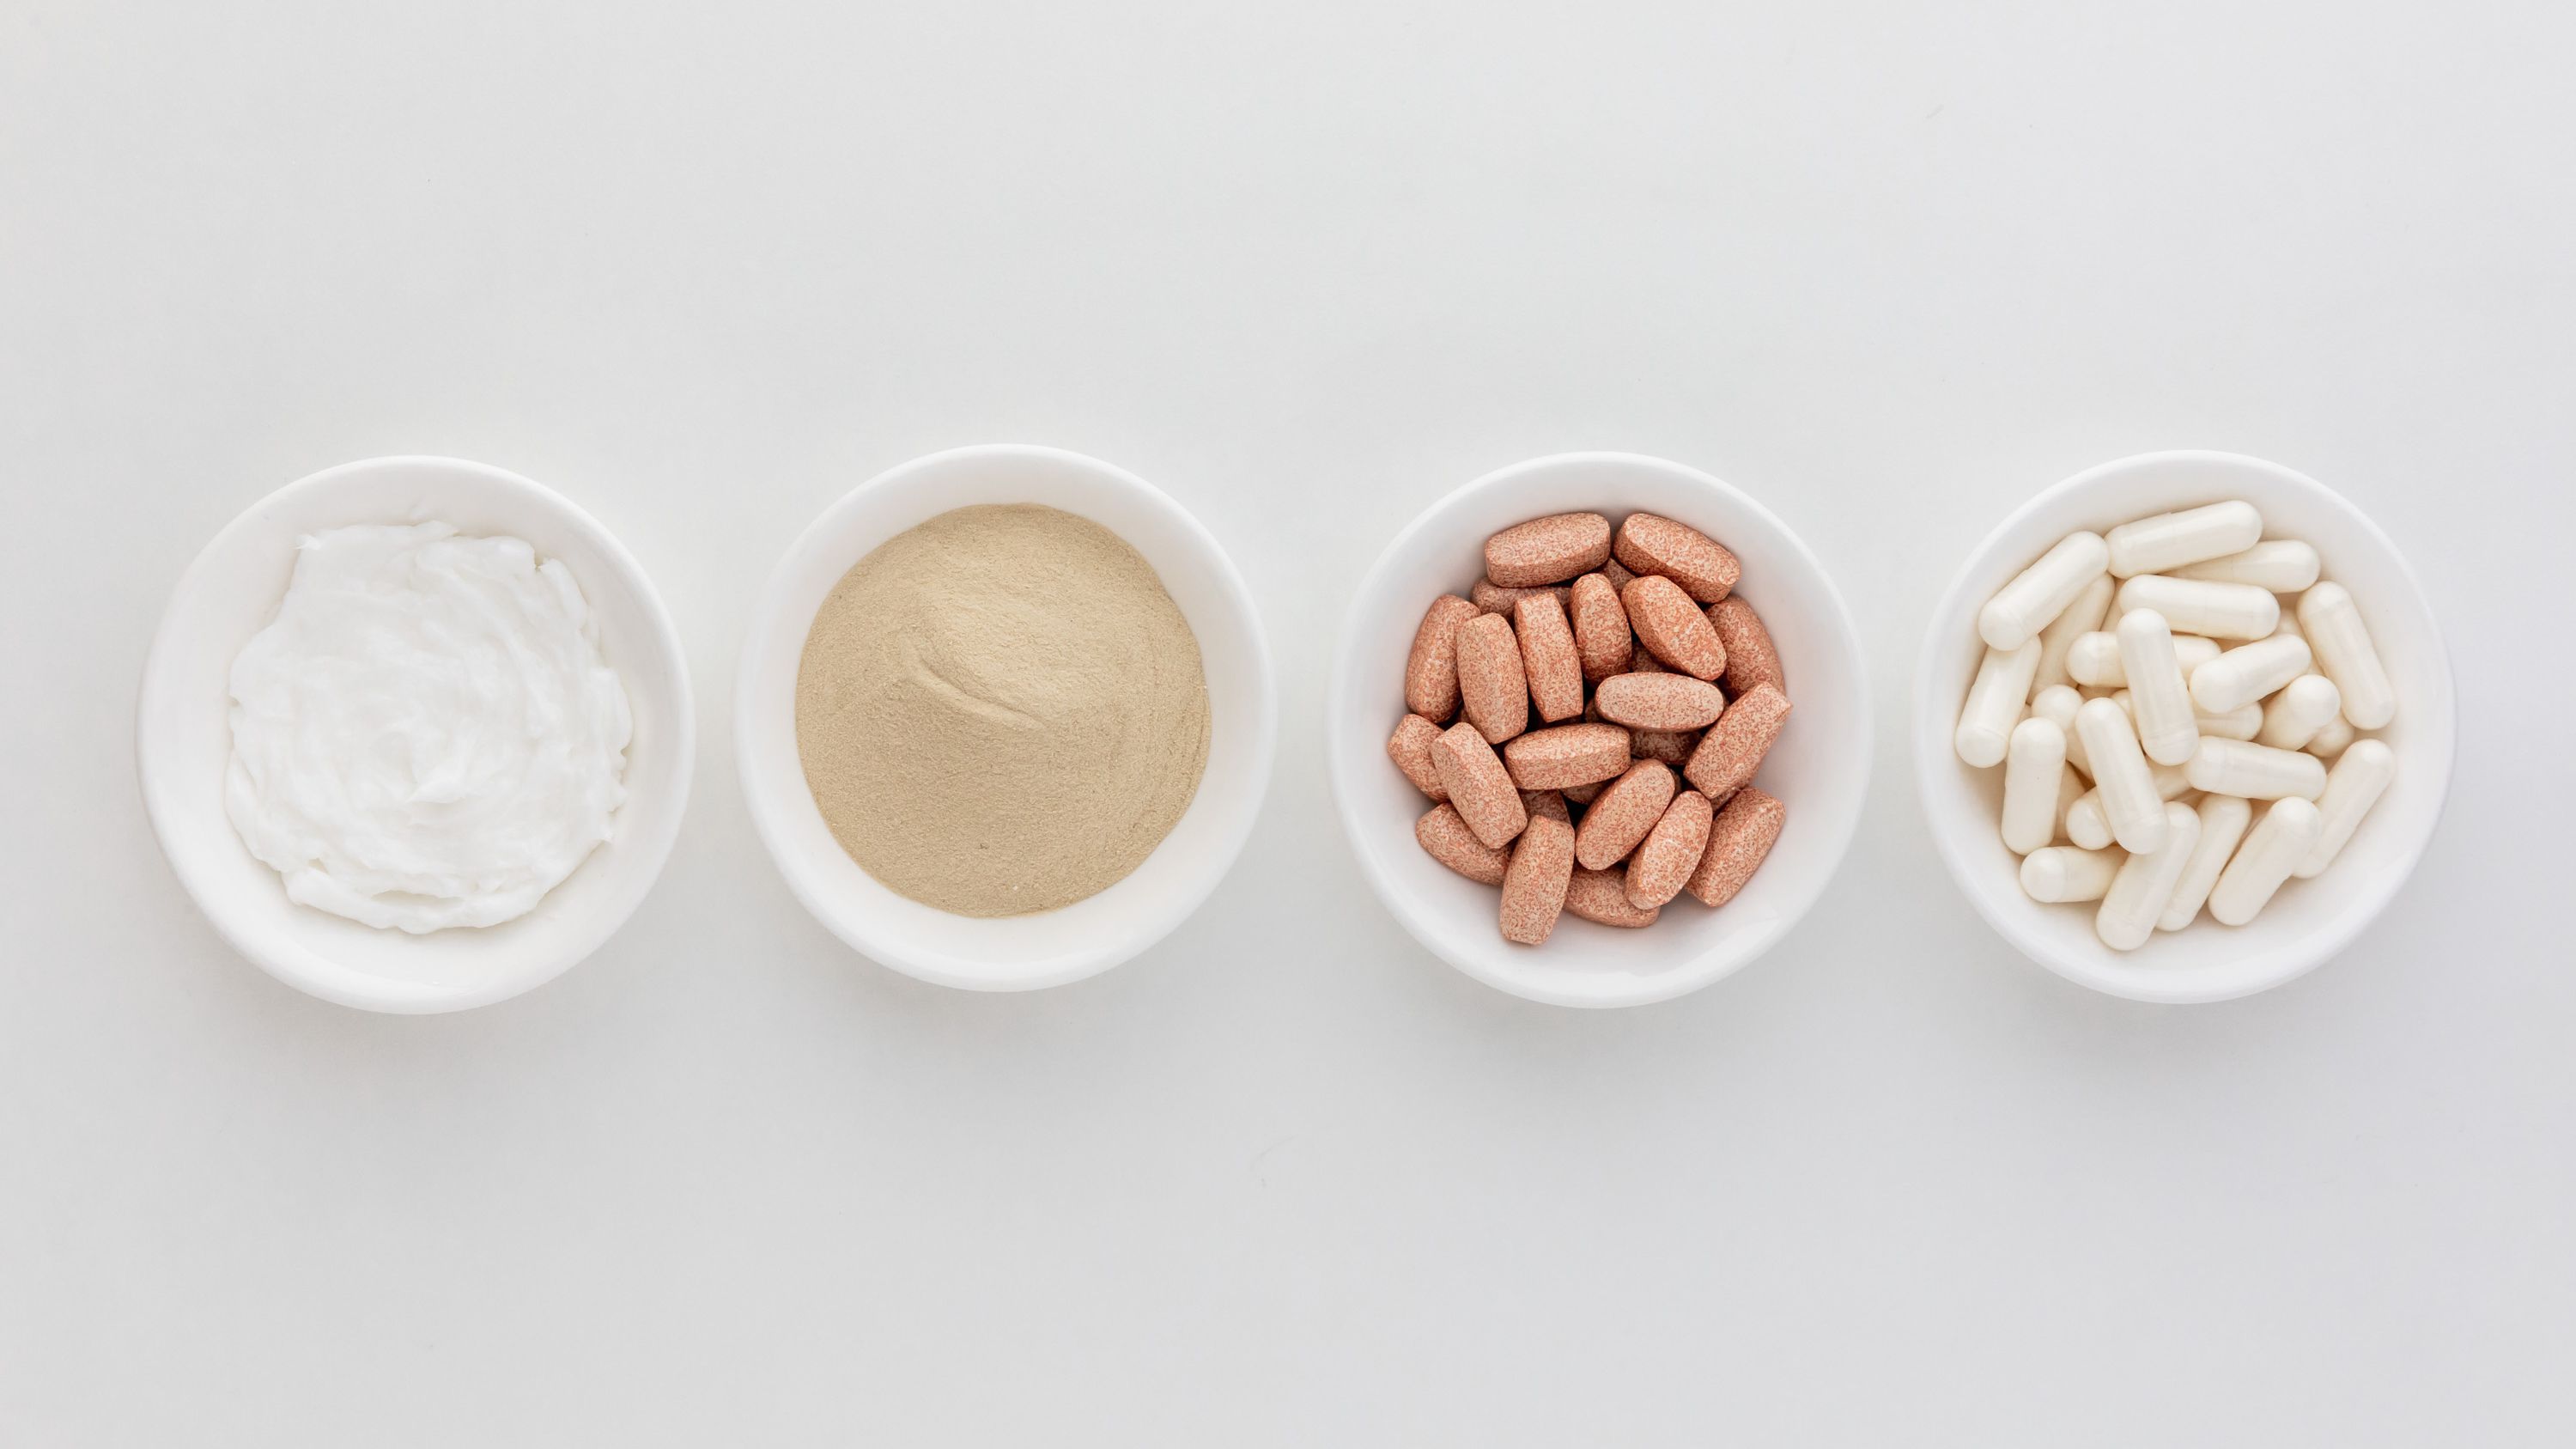 Health benefits of collagen supplements